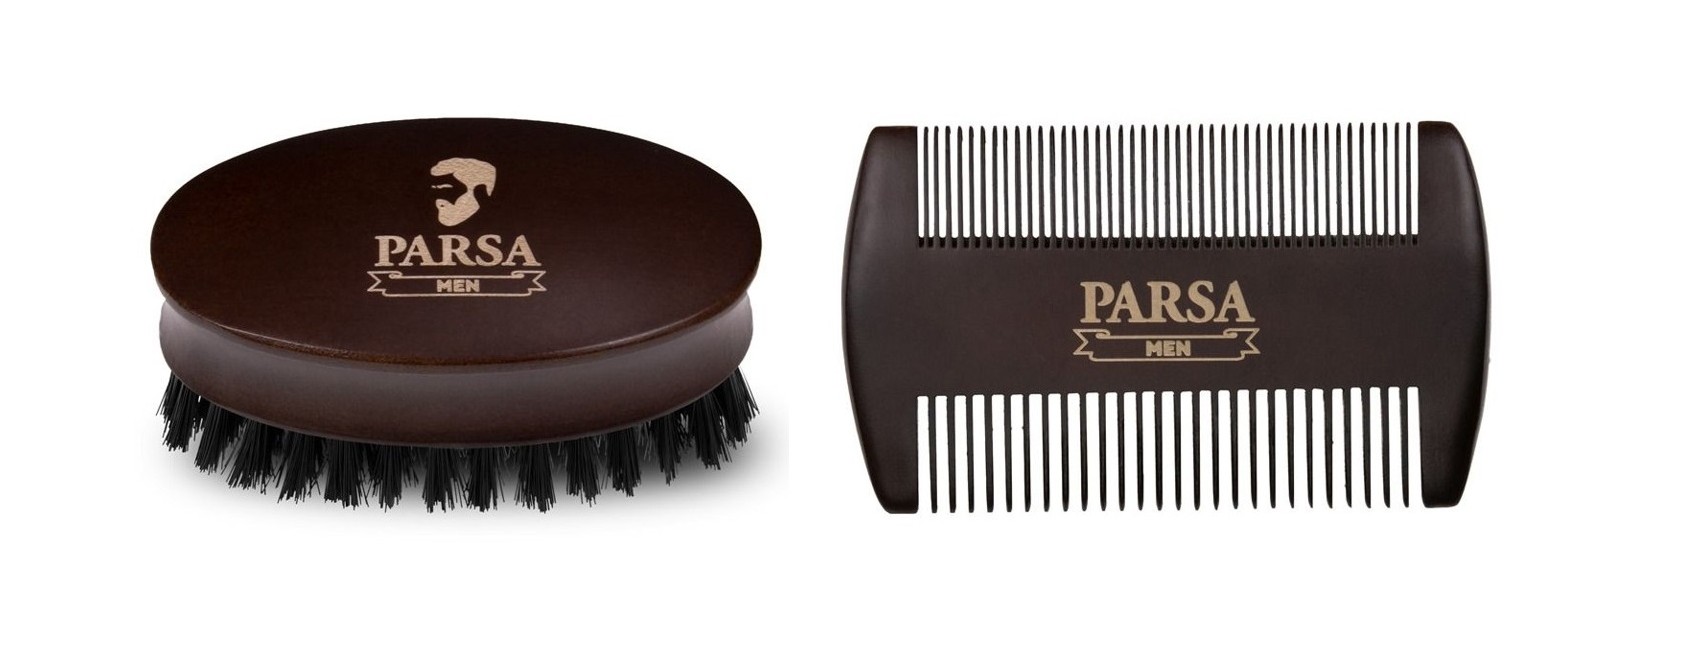 Parsa - Beauty Men Beard Brush + Parsa - Beauty Men Beard Comb